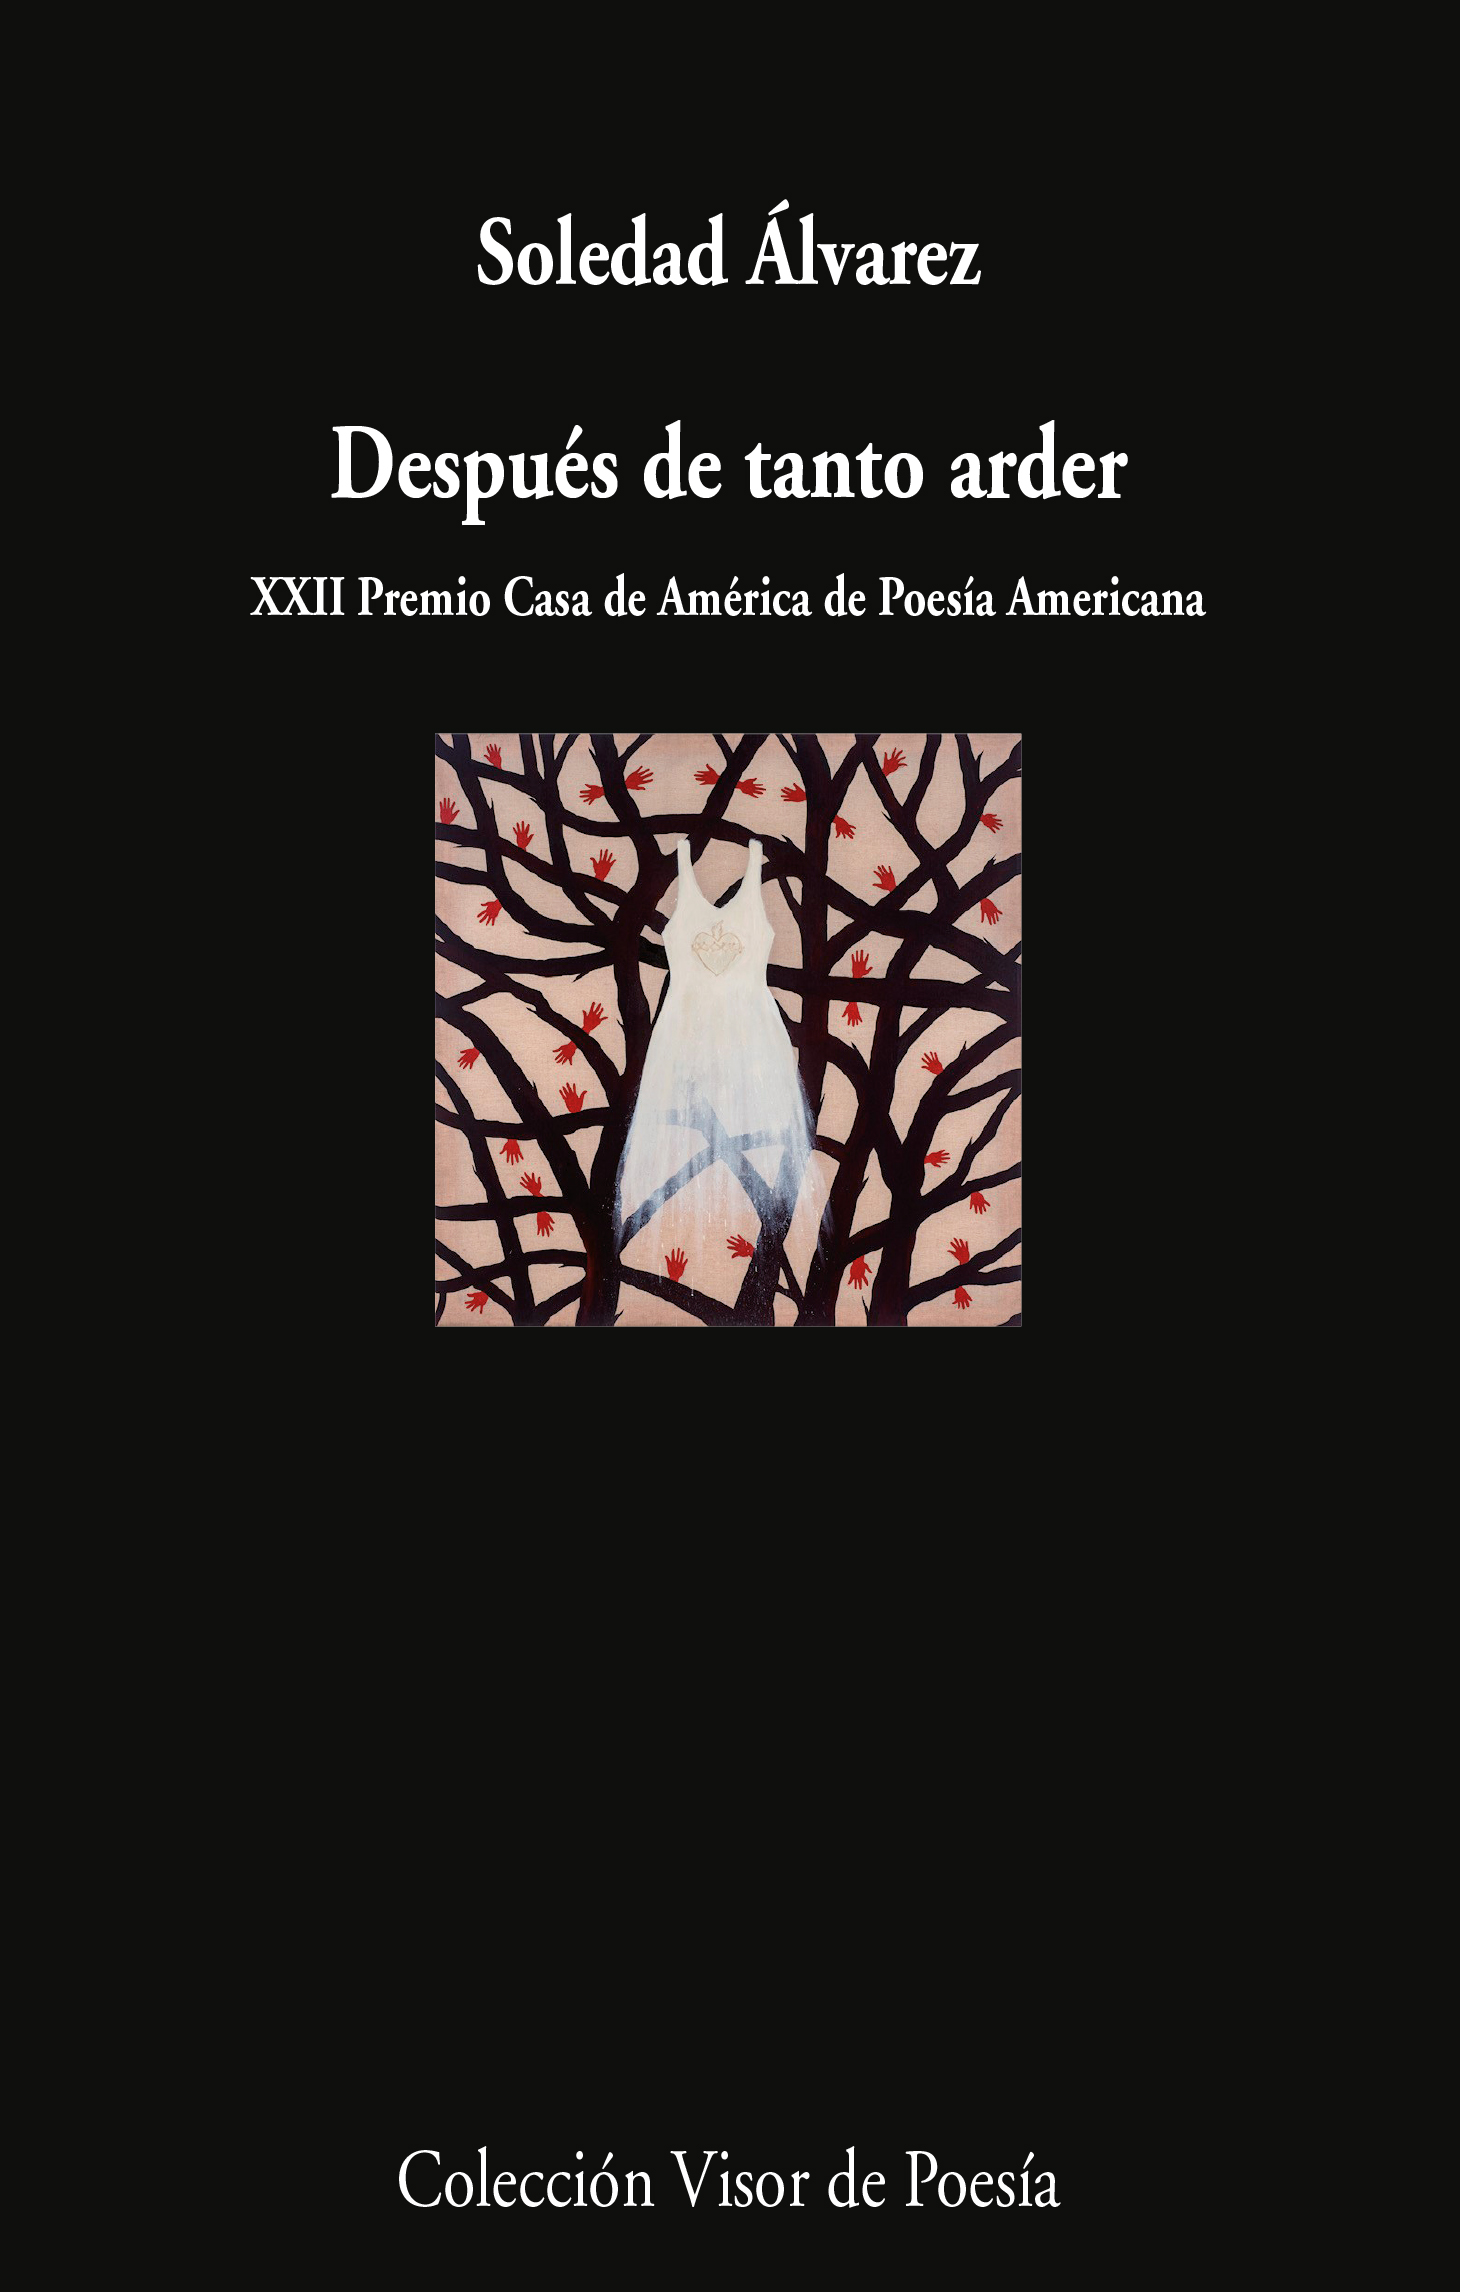 5 poemas de Después de tanto arder, de Soledad Álvarez